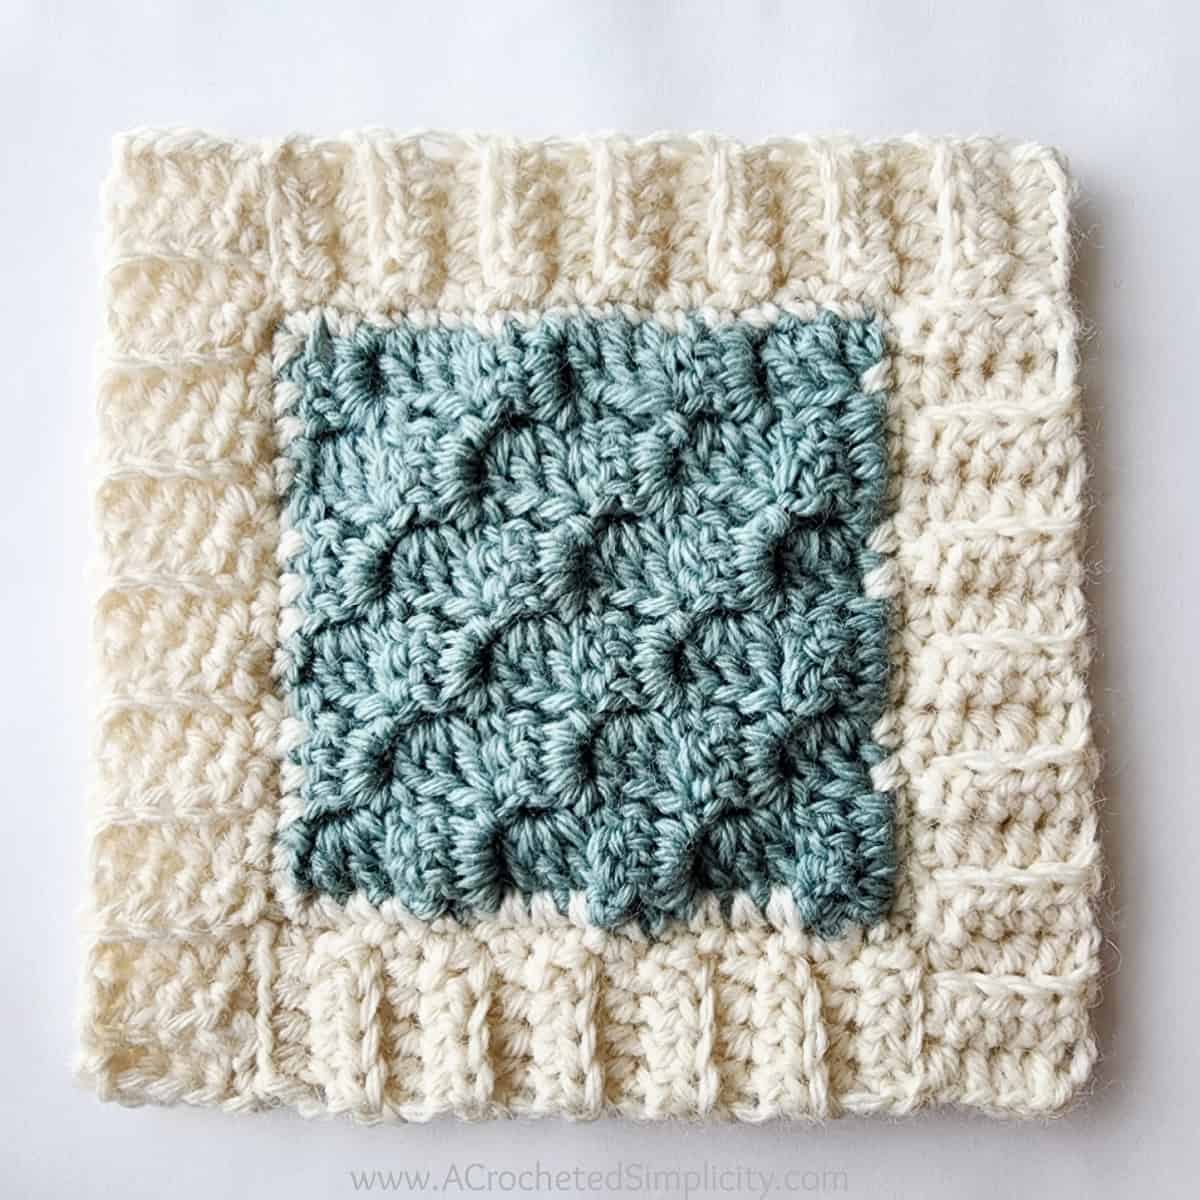 Ribbed border tutorial for C2C crochet blanket.